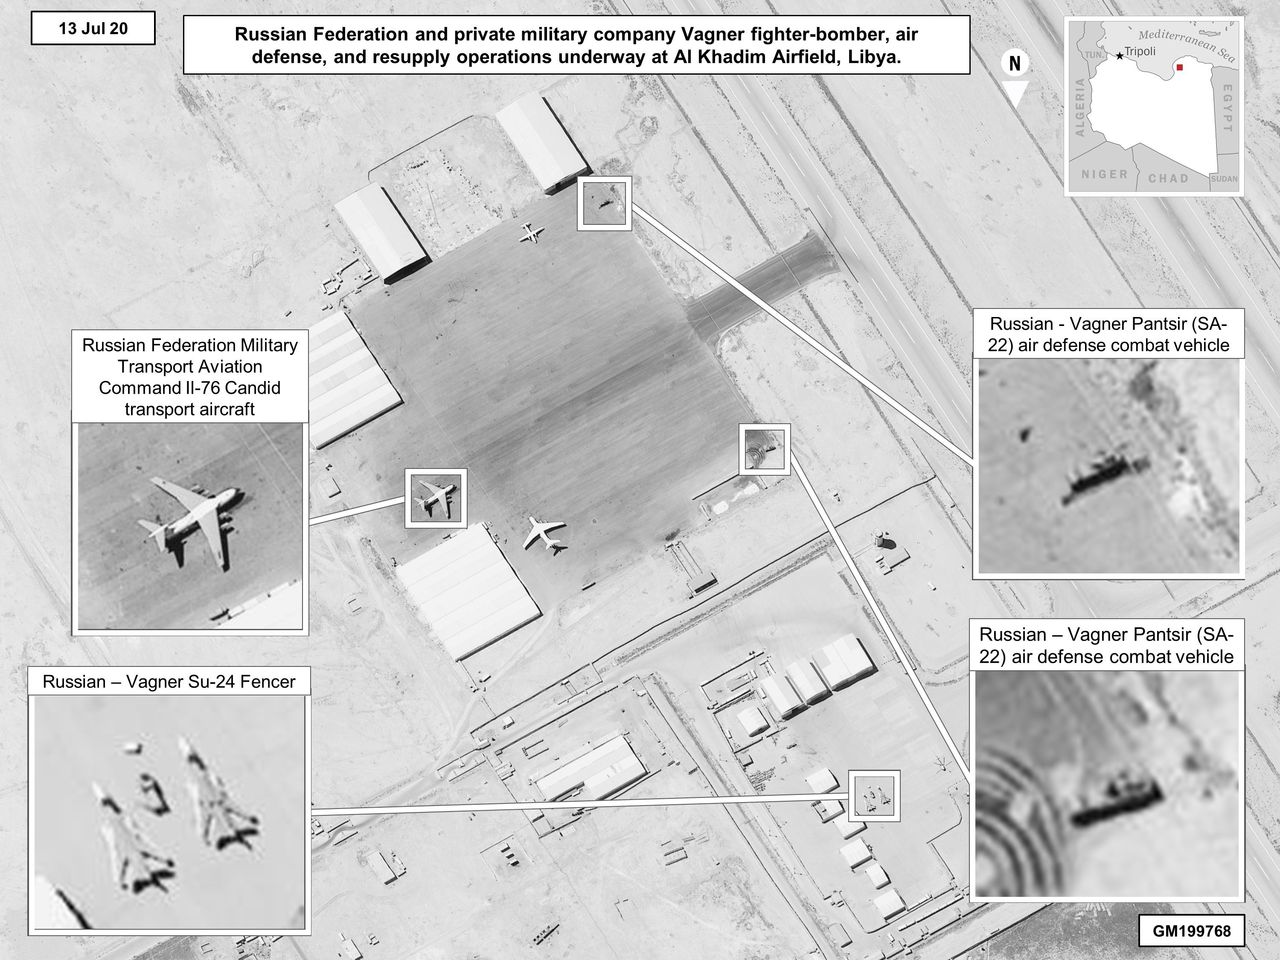 Sprzęt używany przez Grupę Wagnera w Libii - dane udostępnione przez amerykański Departament Obrony